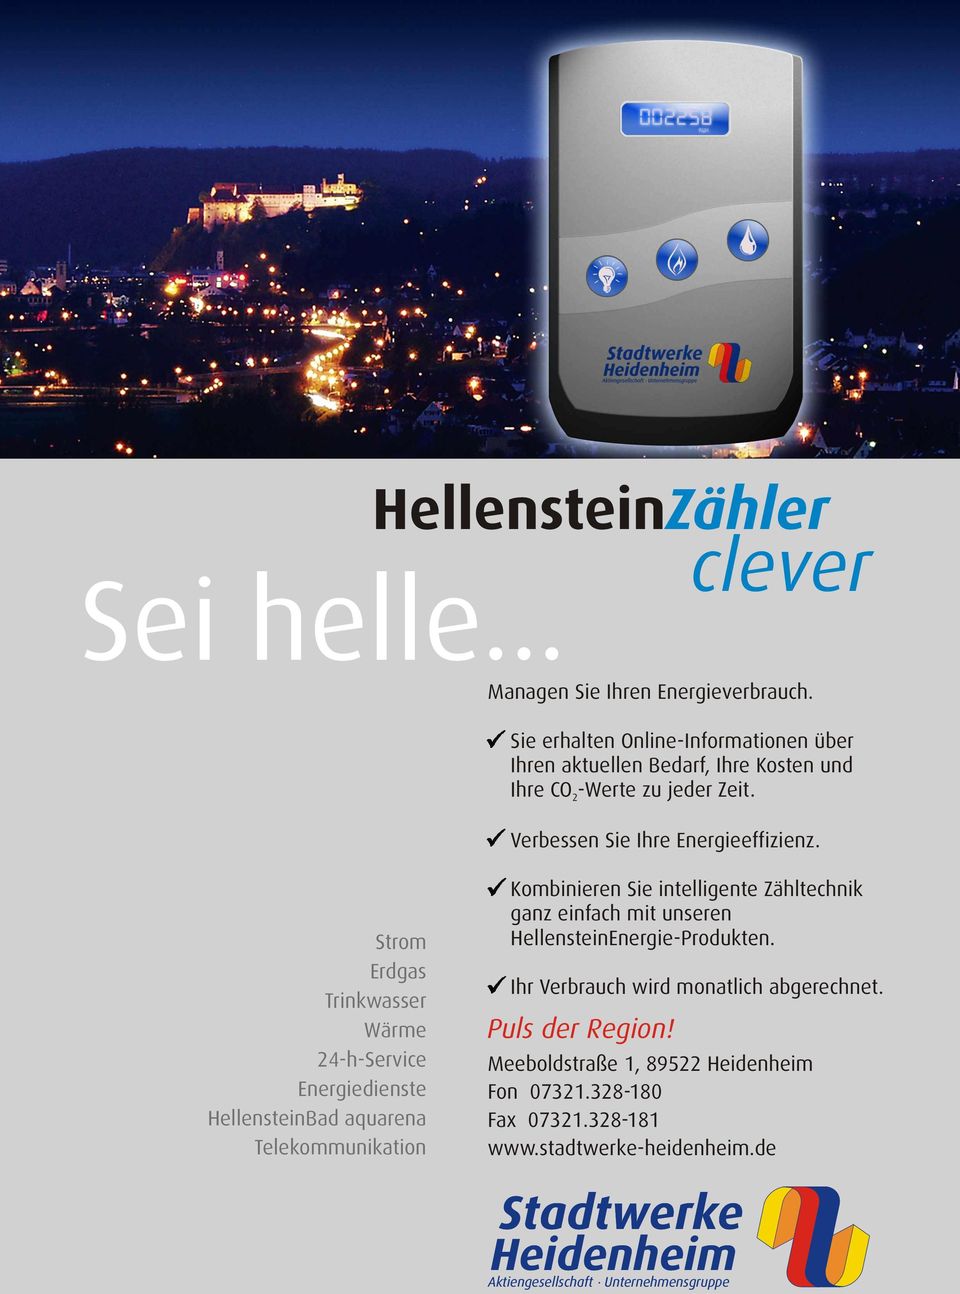 Strom Erdgas Trinkwasser Wärme 24-h-Service Energiedienste HellensteinBad aquarena Telekommunikation Kombinieren Sie intelligente Zähltechnik ganz einfach mit